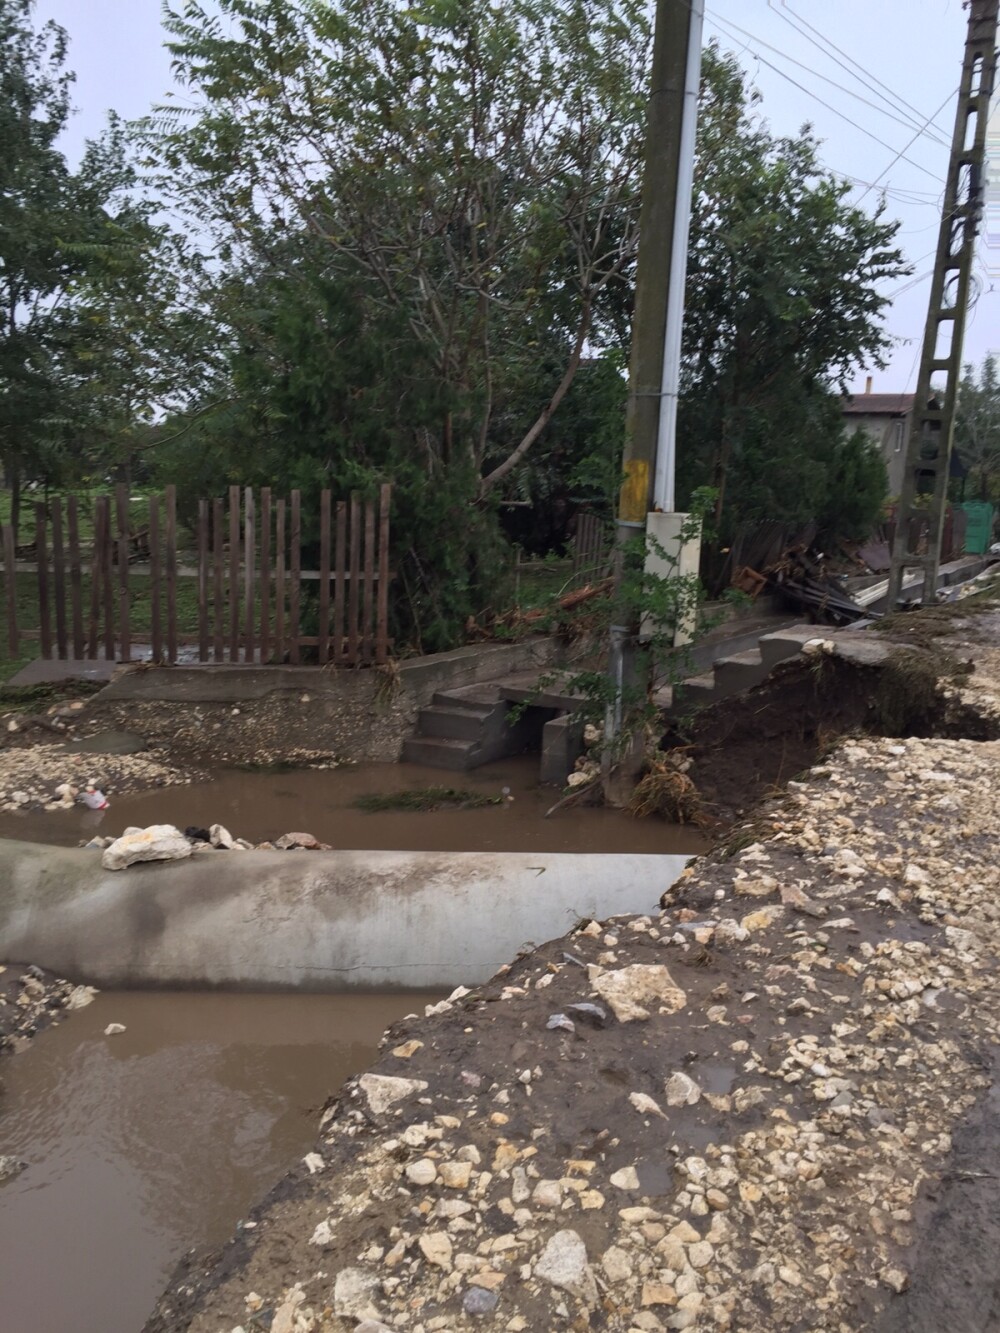 Inundatii puternice in Constanta. Circulatia intre Navodari si Corbu, inchisa dupa ce zeci de masini au fost luate de ape - Imaginea 4